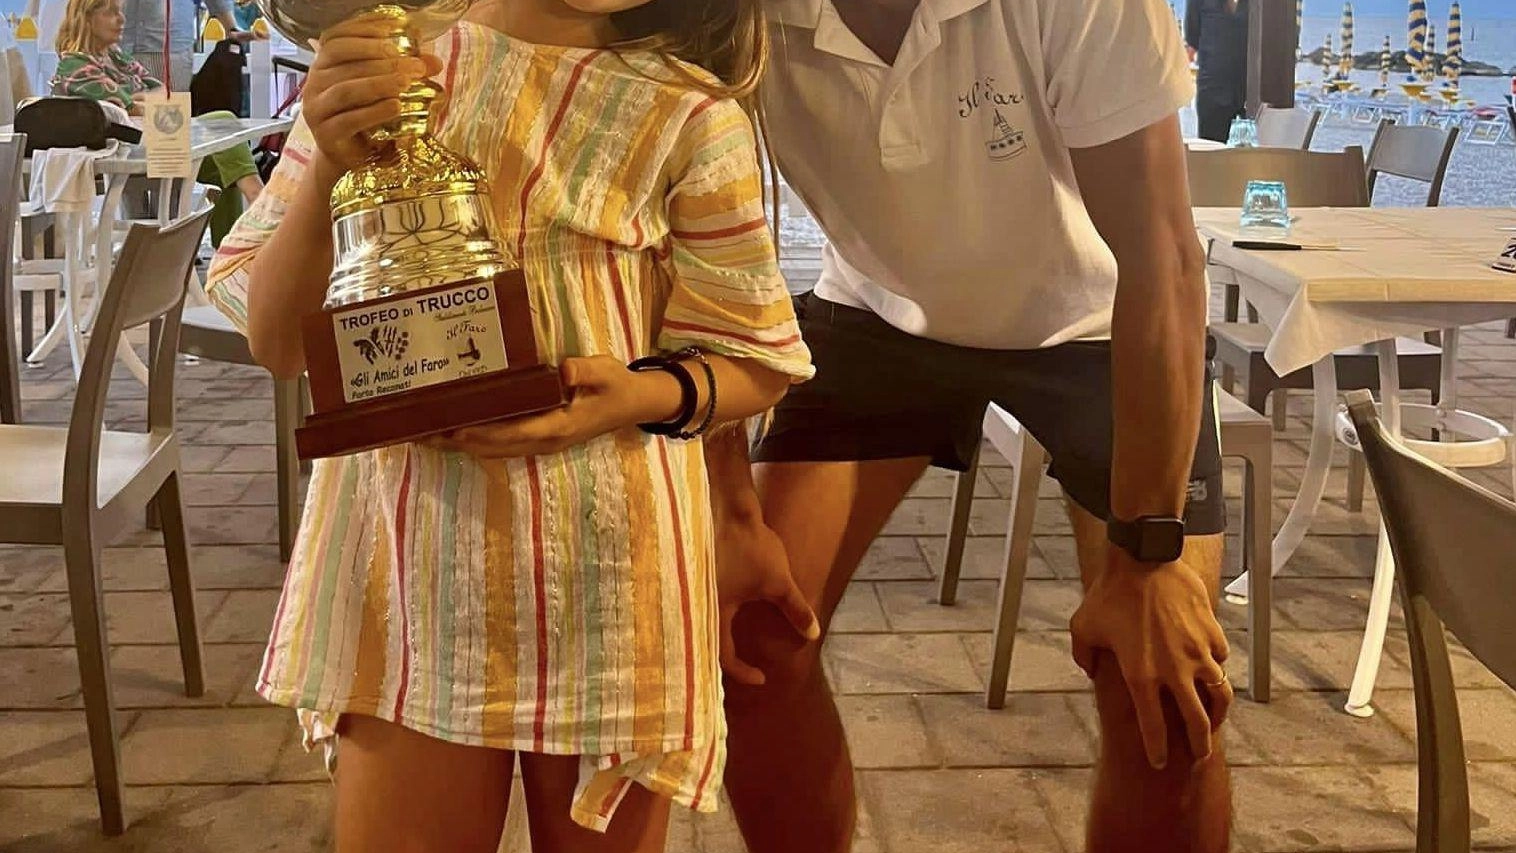 

Matilde Bovetti vince a Porto Recanati il torneo di trucco a 9 anni